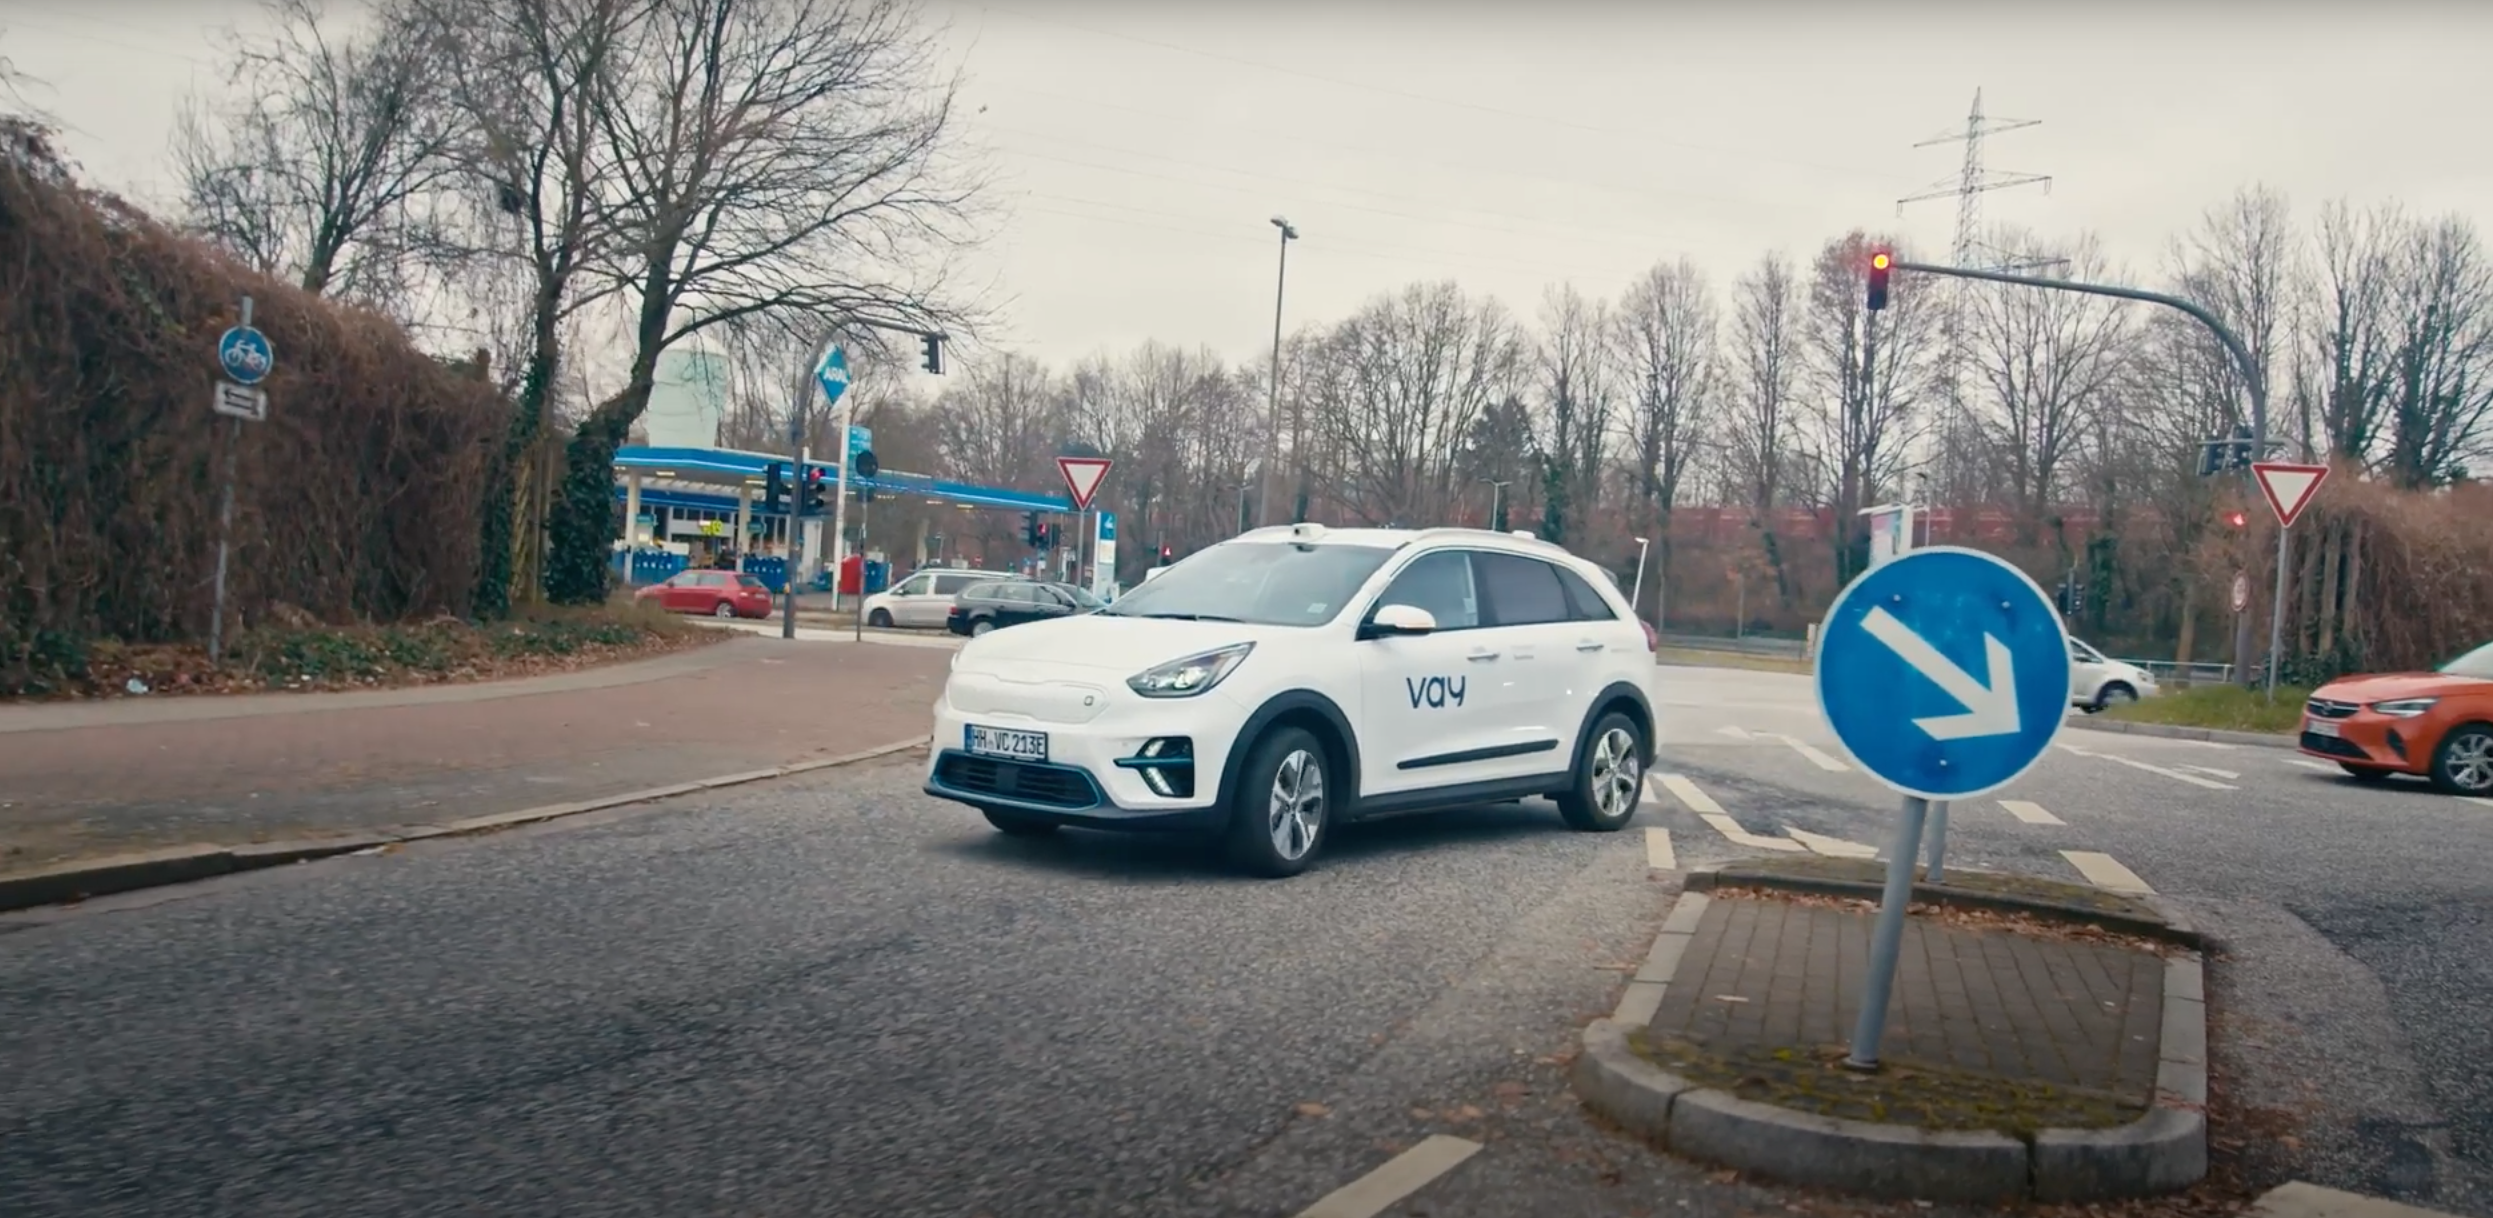 In Nettelnburg war zum ersten Mal in Europa ein Auto per Telefahrer unterwegs.